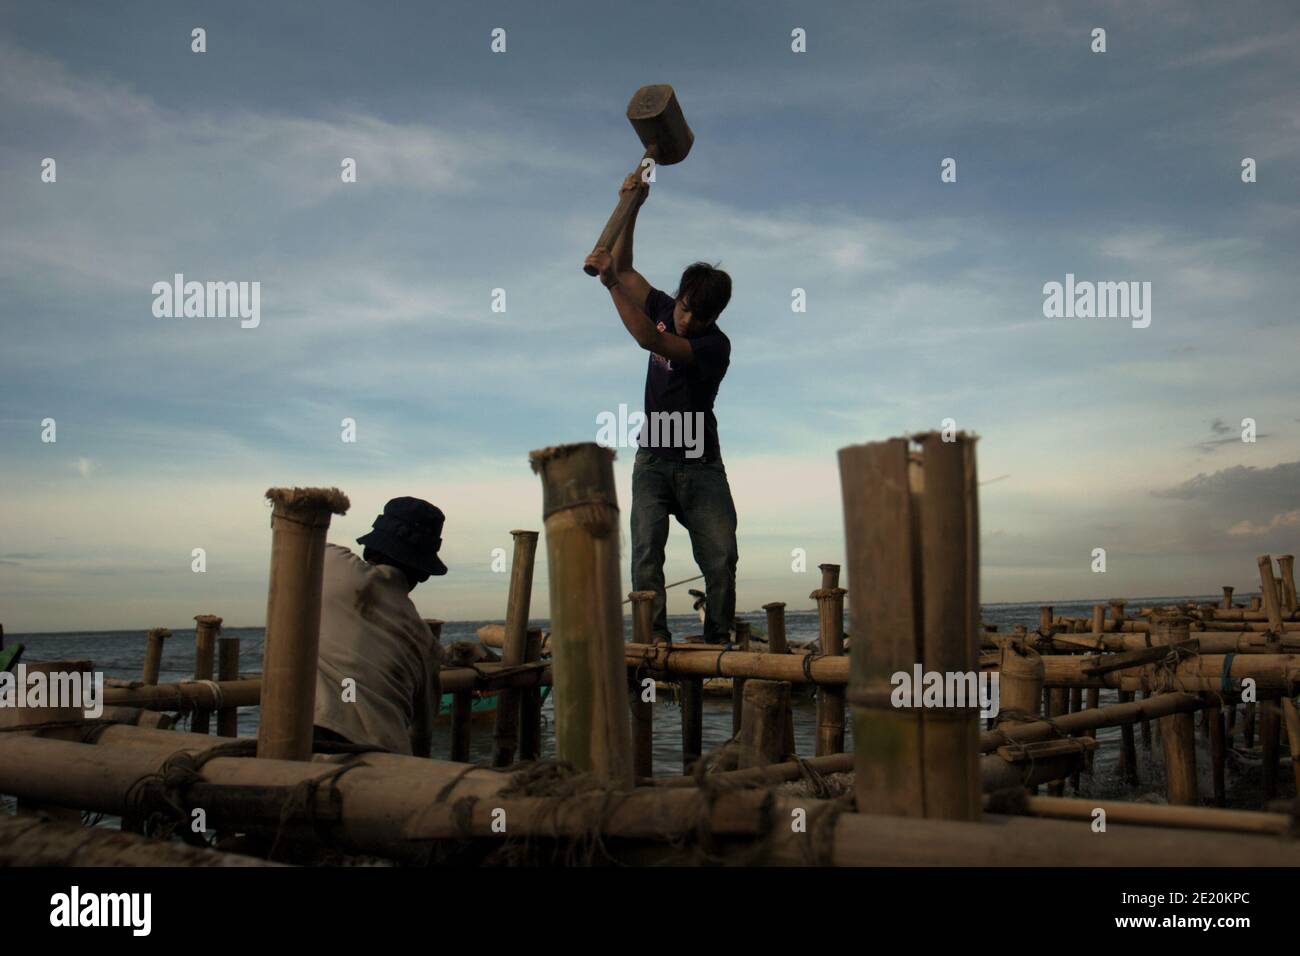 Los hombres construyen una estructura costera usando postes de bambú. Foto de stock